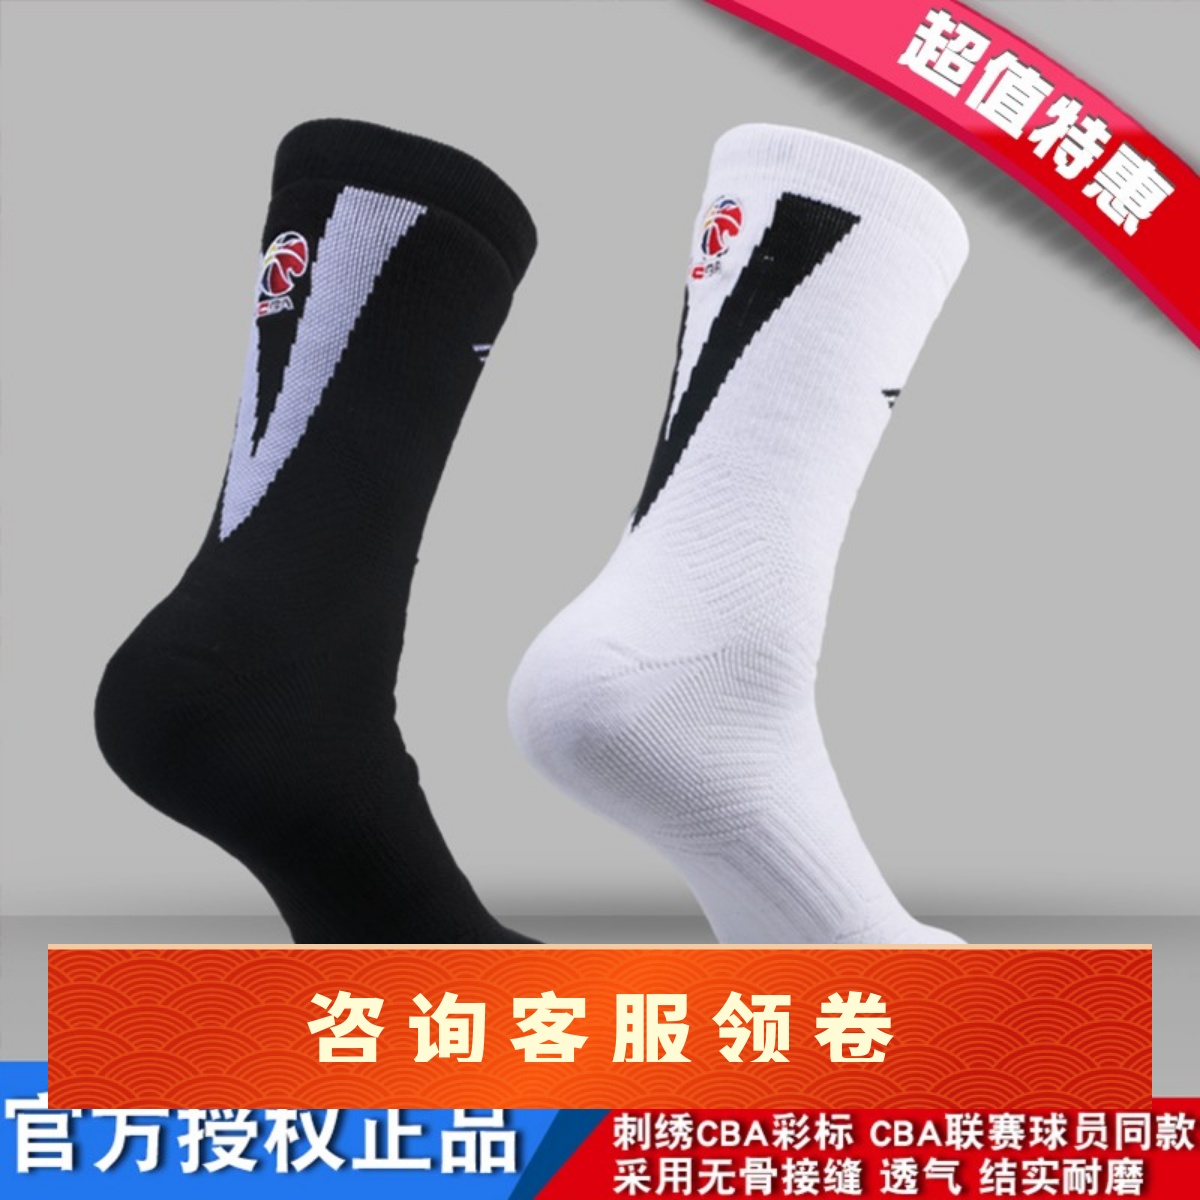 中国李宁赞助cba联赛毛巾篮球袜